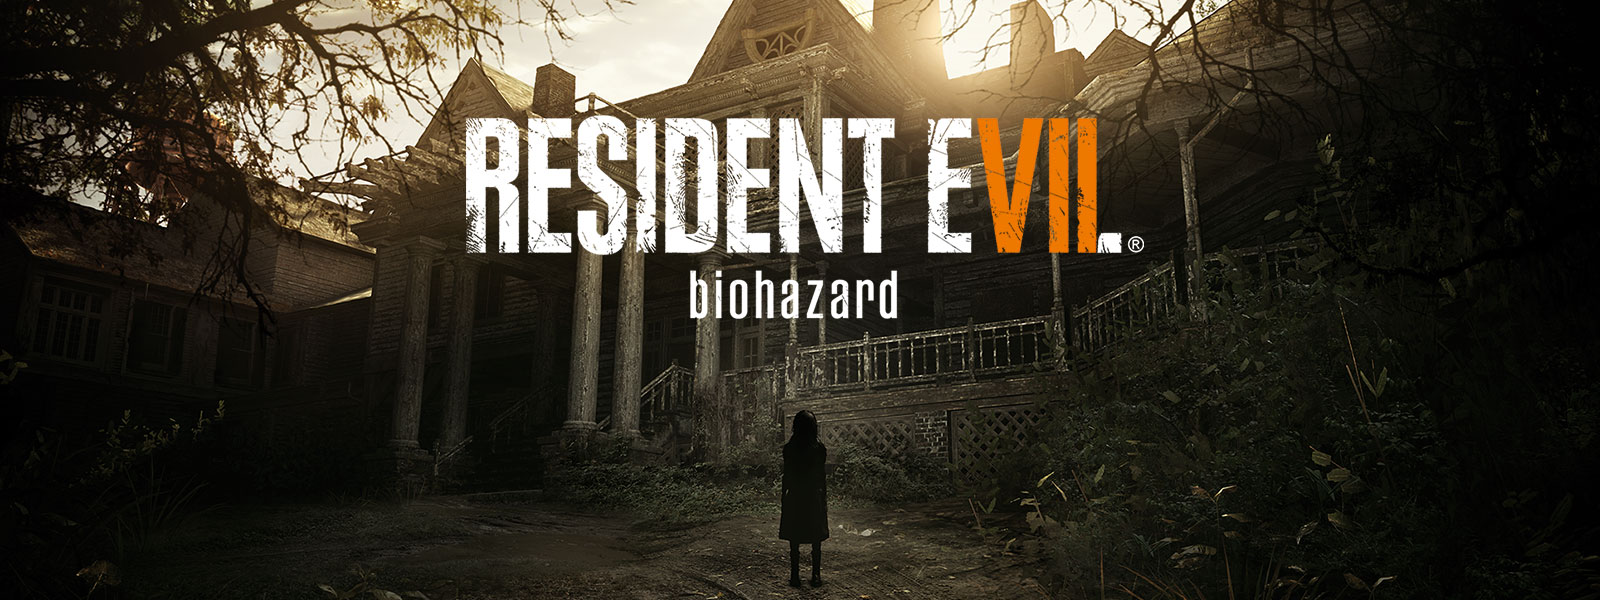 Immagine della confezione di Resident Evil 7 Biohazard Gold Edition sovrapposta alla scena di una bambina dall'aspetto inquietante davanti a una casa abbandonata